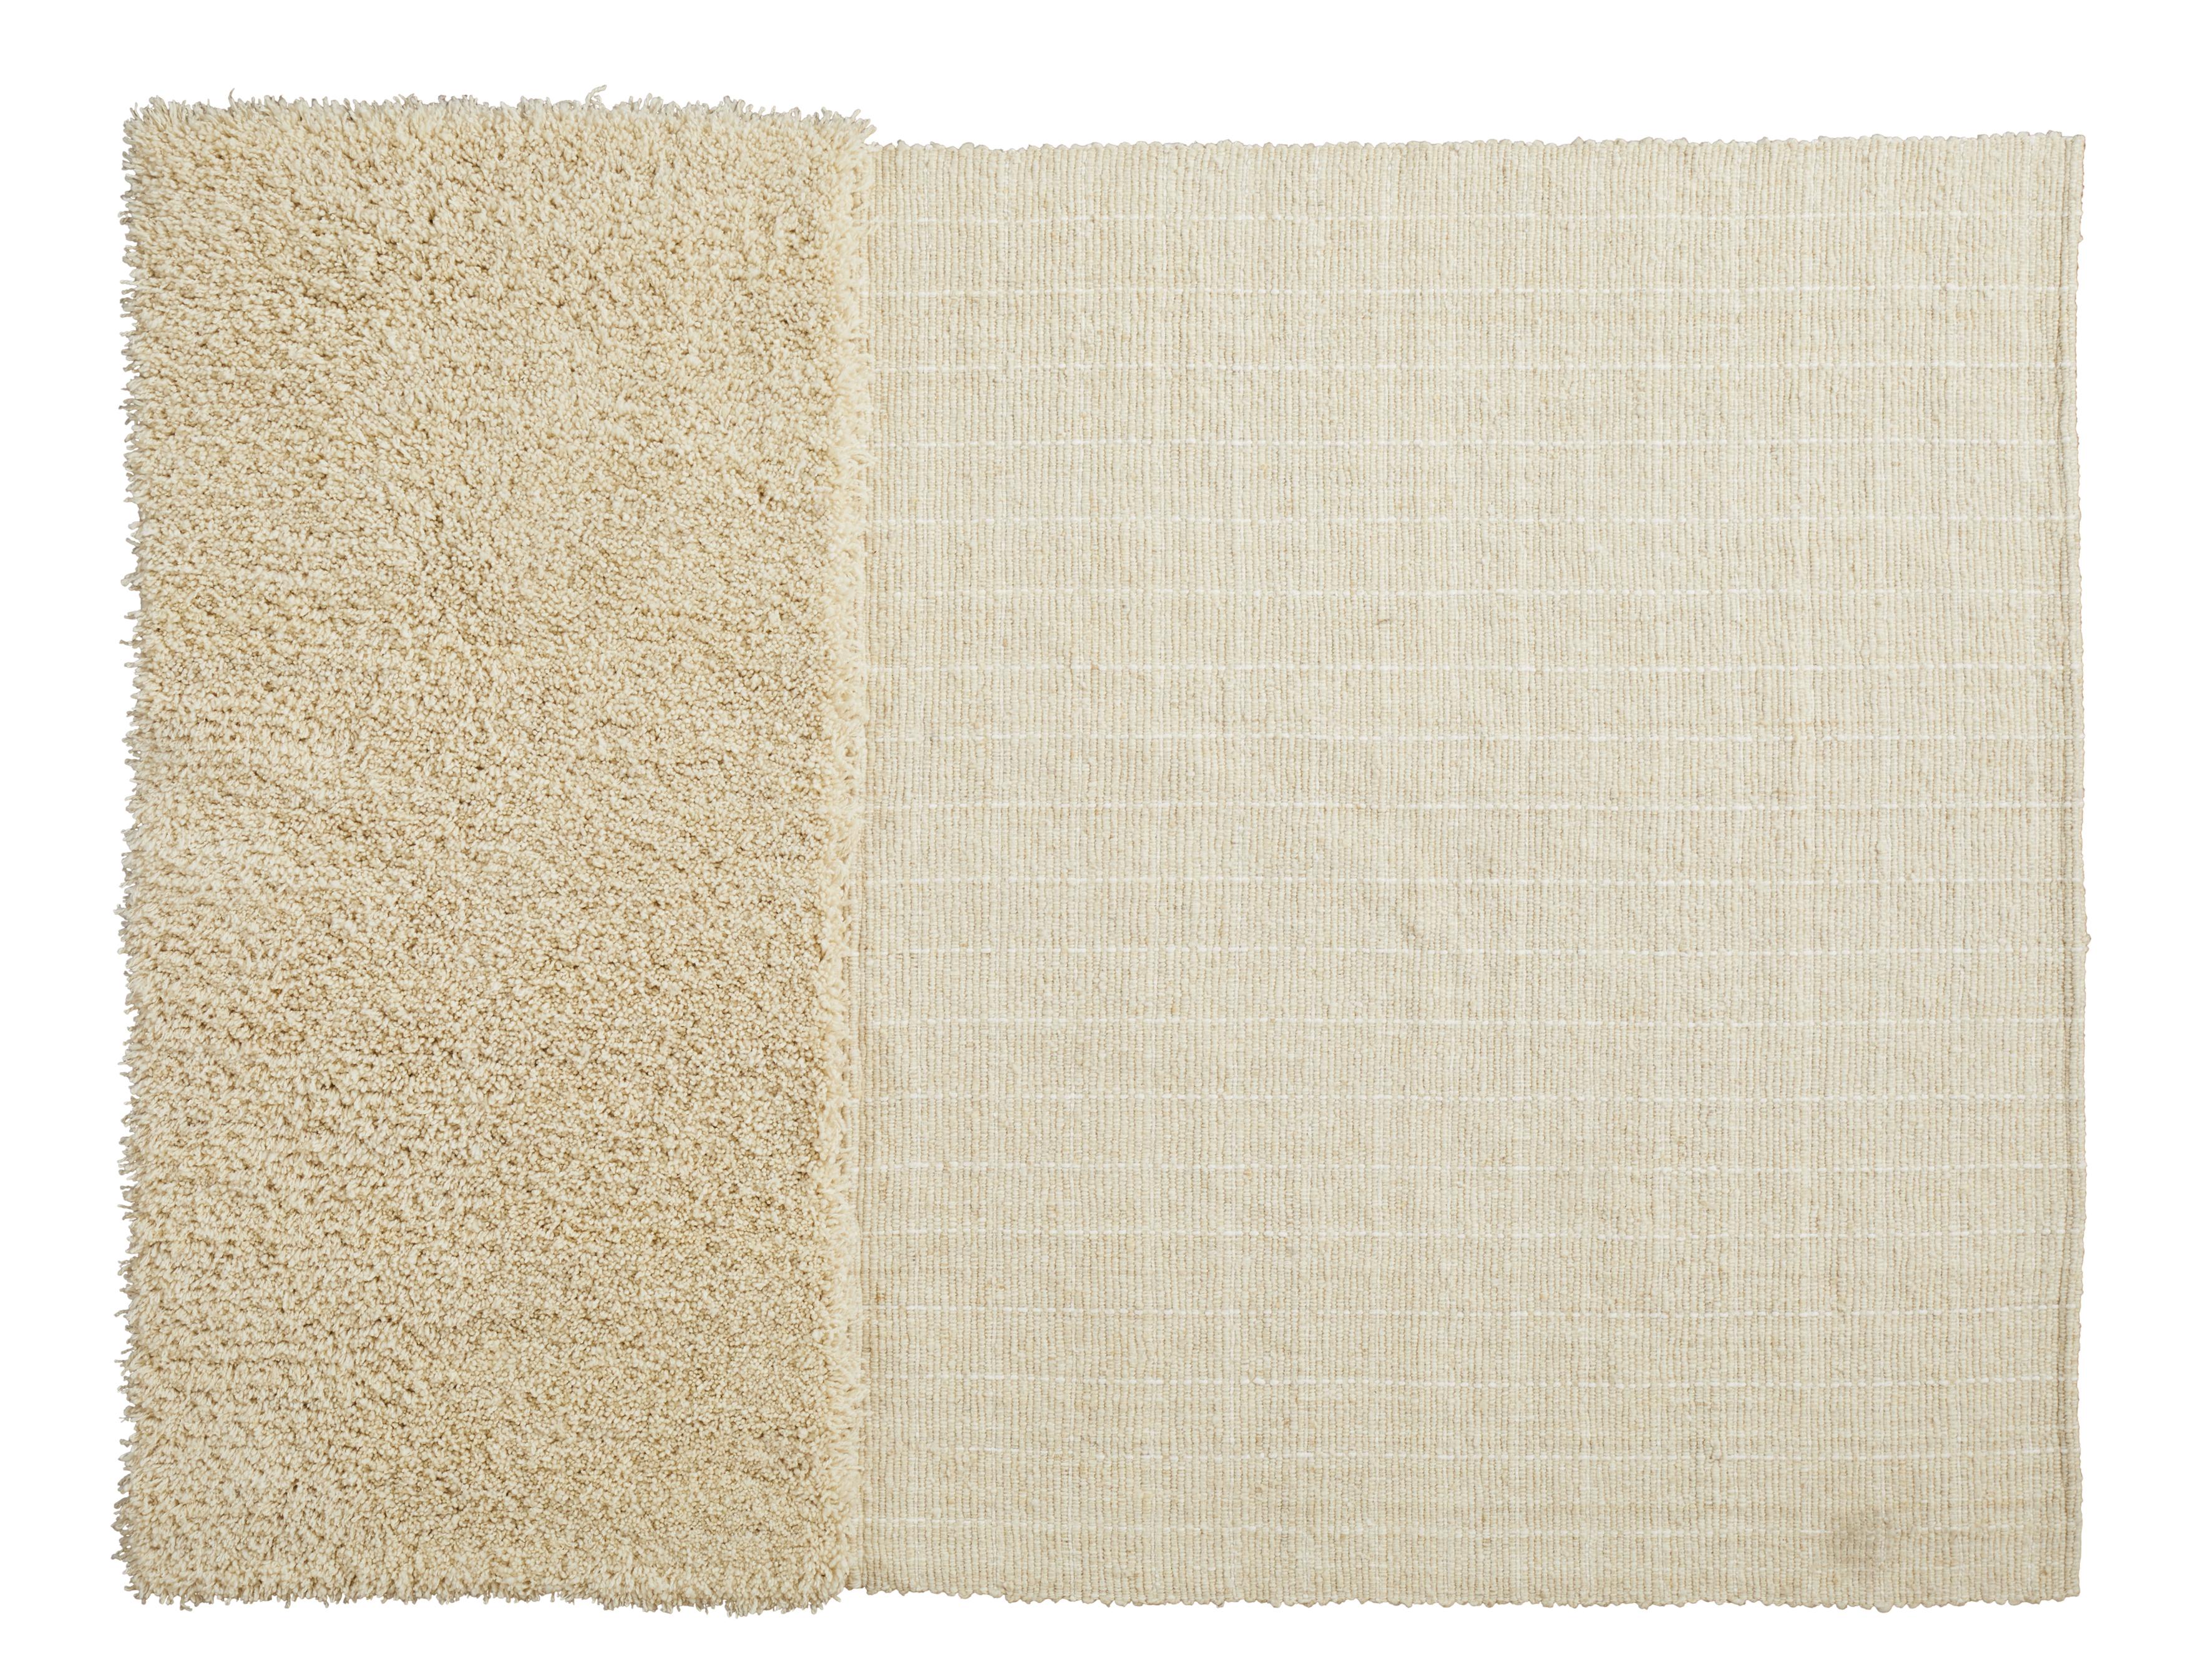 Petit tapis moton Subas de Sebastian Herkner
Matériaux : 100% laine vierge naturelle. 
Technique : Fibres teintes naturellement. Tissé à la main en Colombie.
Dimensions : L 160 x L 220 cm 
Disponible en couleurs : Karo, linea 1, linea 2, moton,